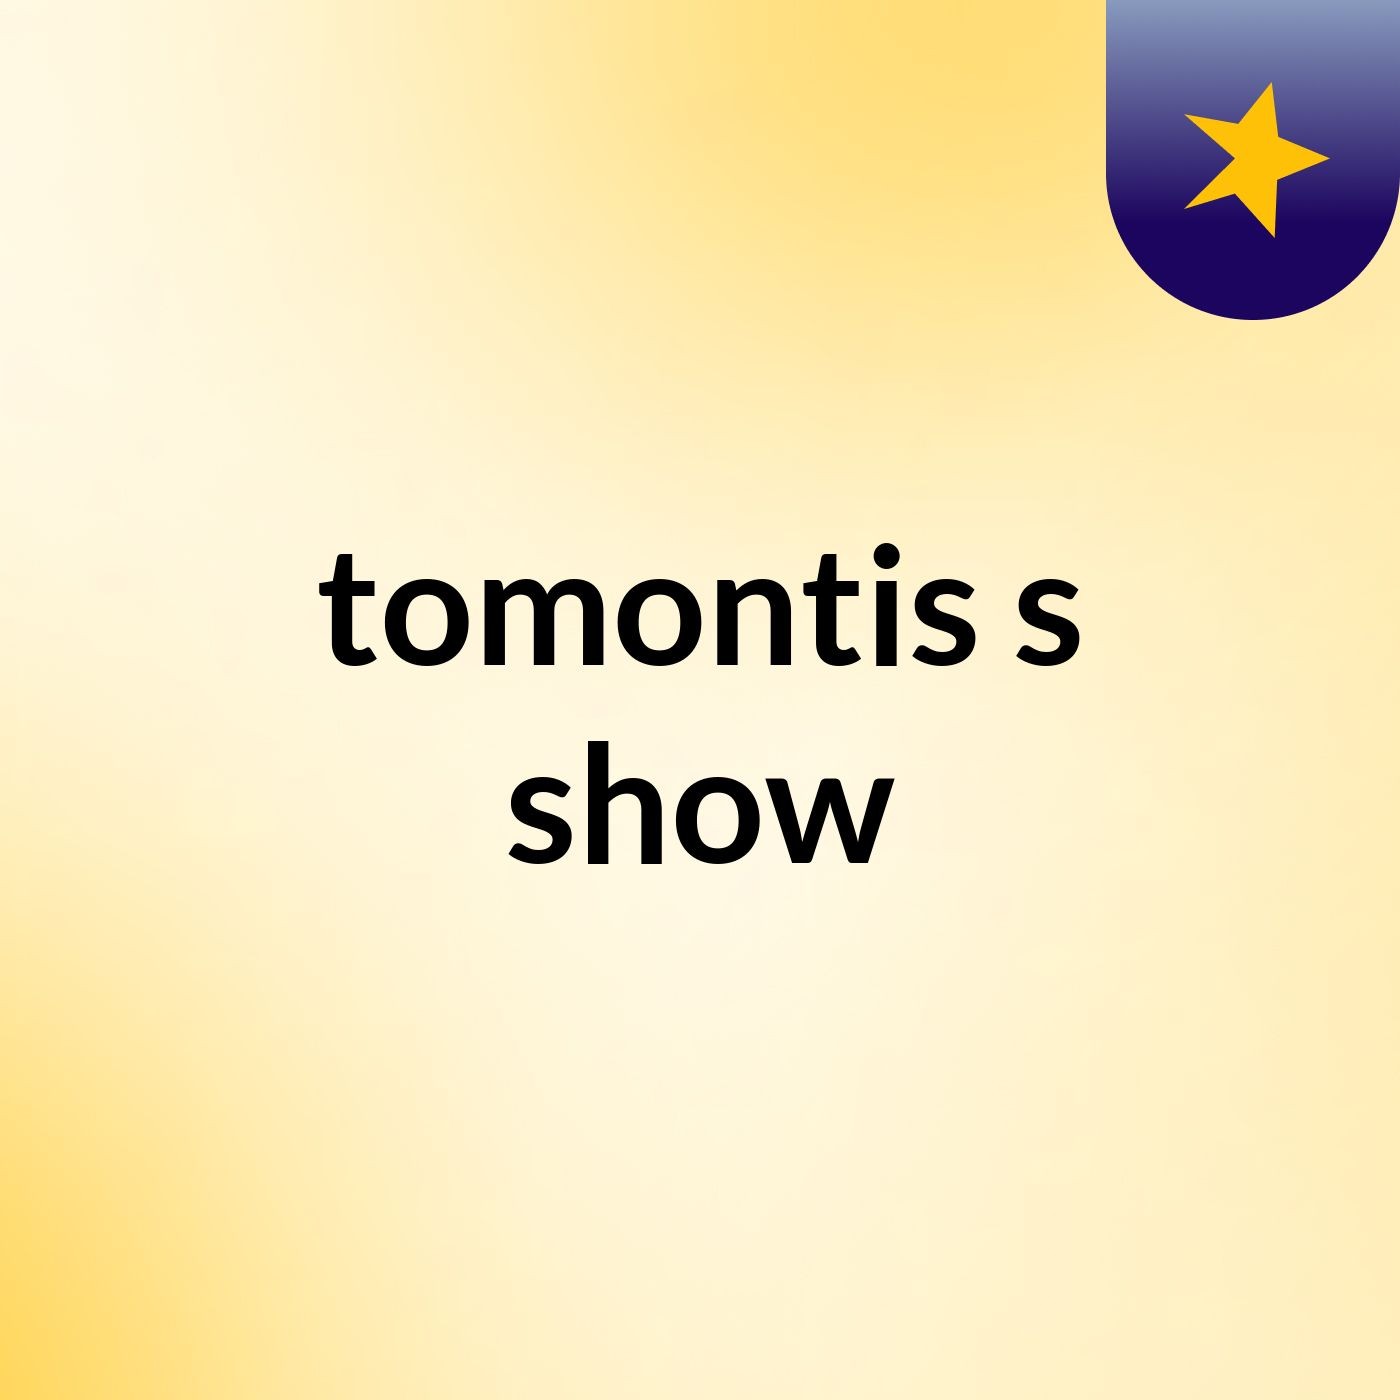 tomontis's show